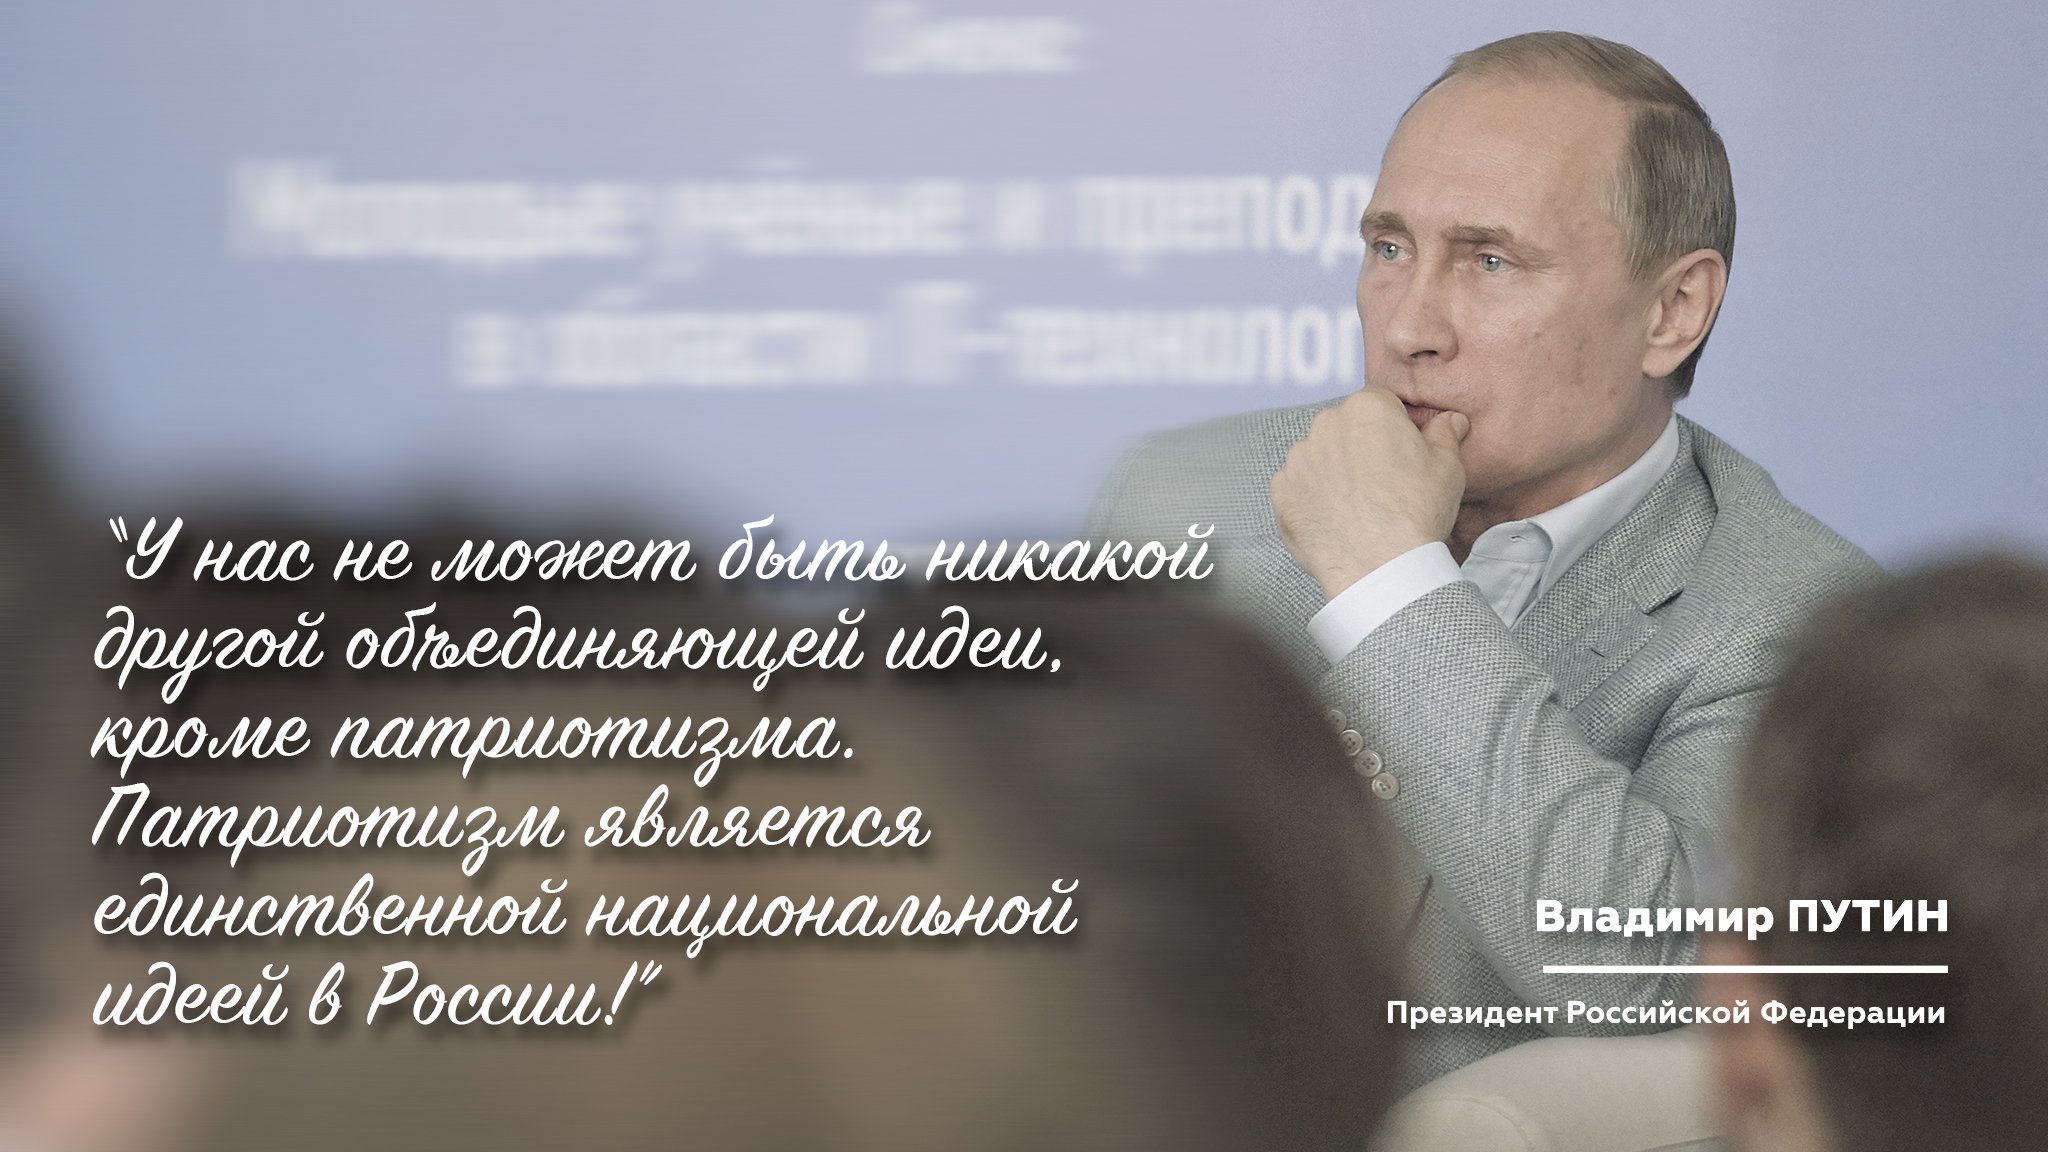 Чувство гордости за свою родину объединяет людей. Патриотические высказывания. Высказывания о патриотизме. Цитаты Путина о патриотизме. Цитаты Путина о любви.